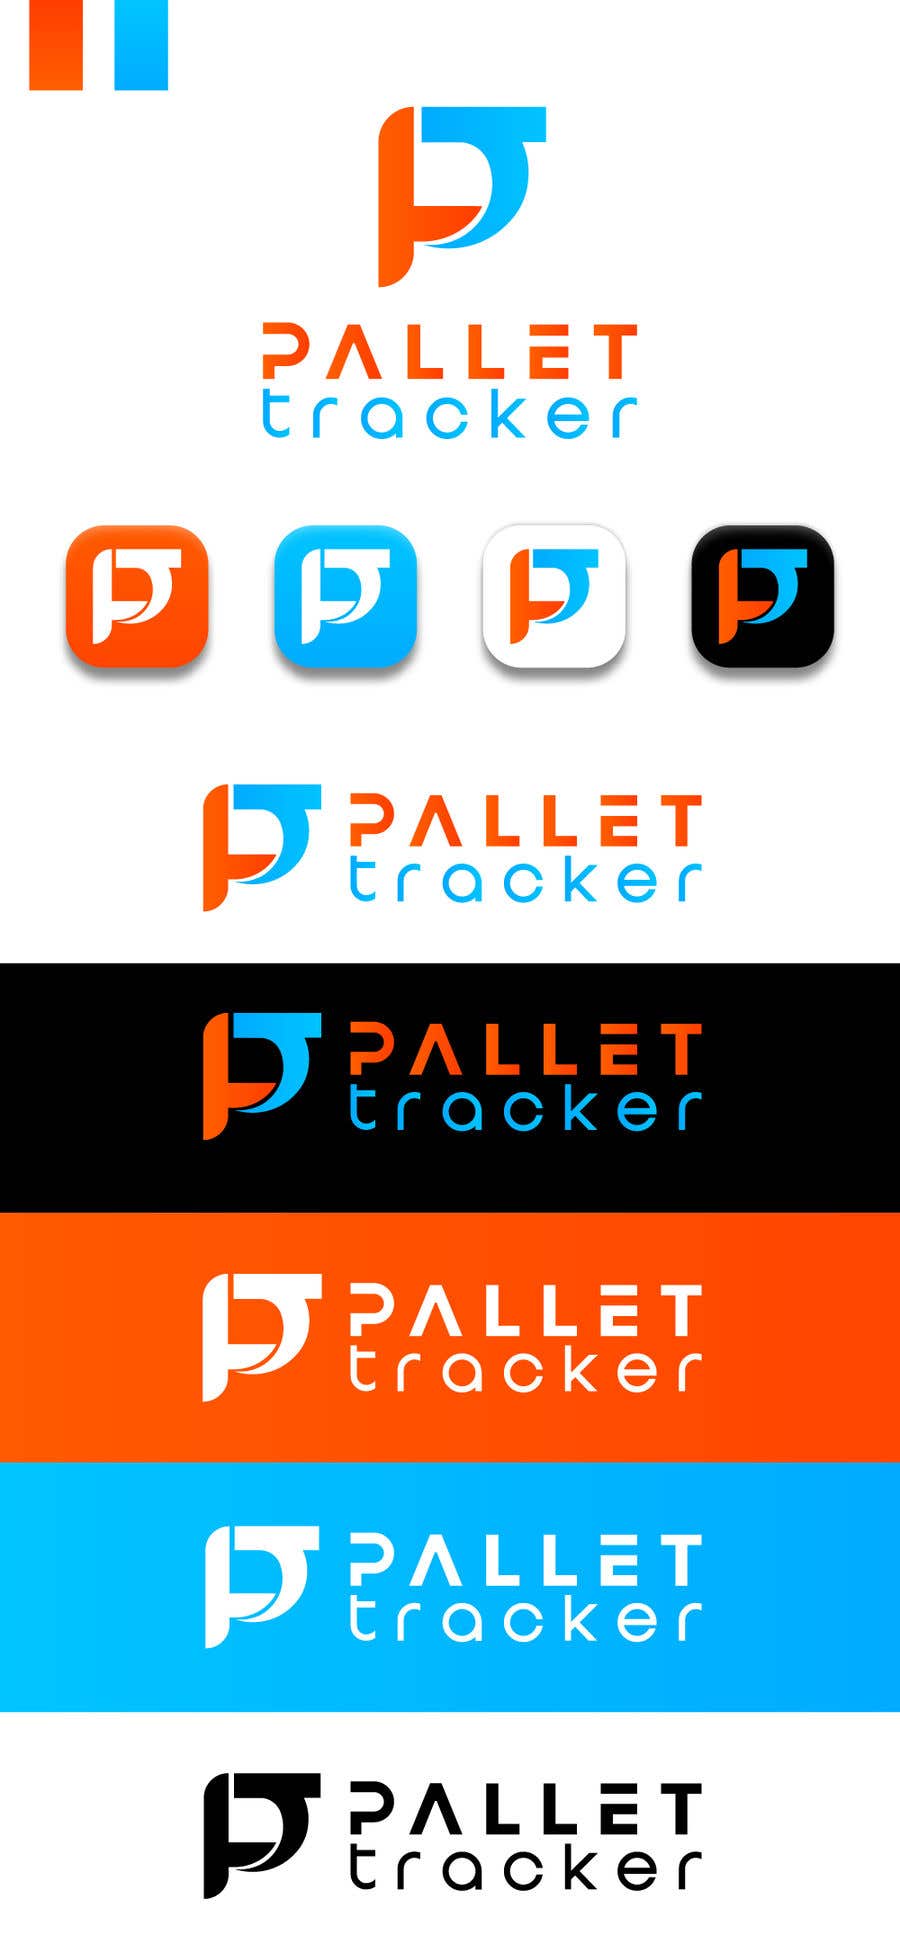 
                                                                                                                        Bài tham dự cuộc thi #                                            434
                                         cho                                             Pallet Tracker Software Logo
                                        